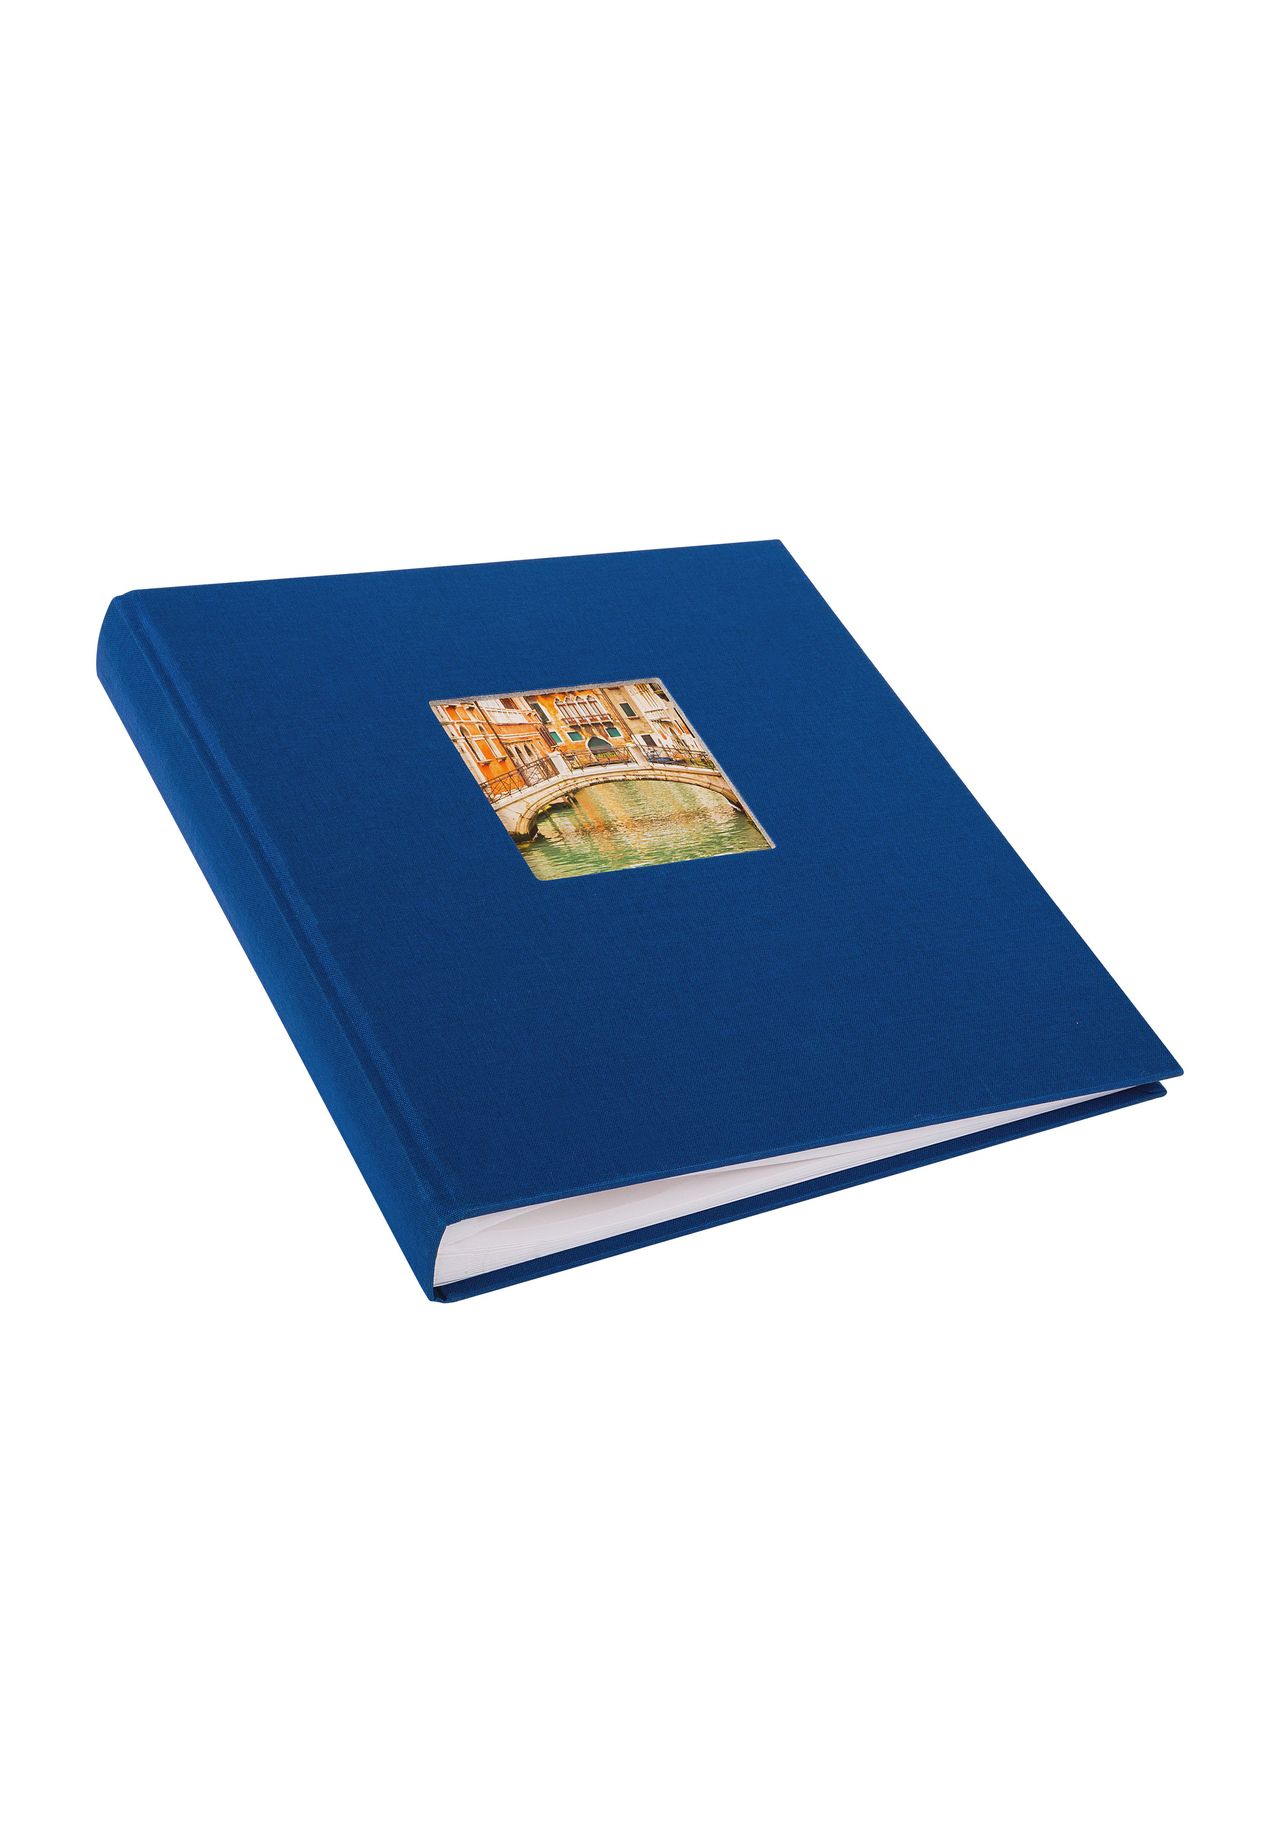 Küche & Haushalt Schreibwaren goldbuch Fotoalbum Bella Vista, 60 Seiten